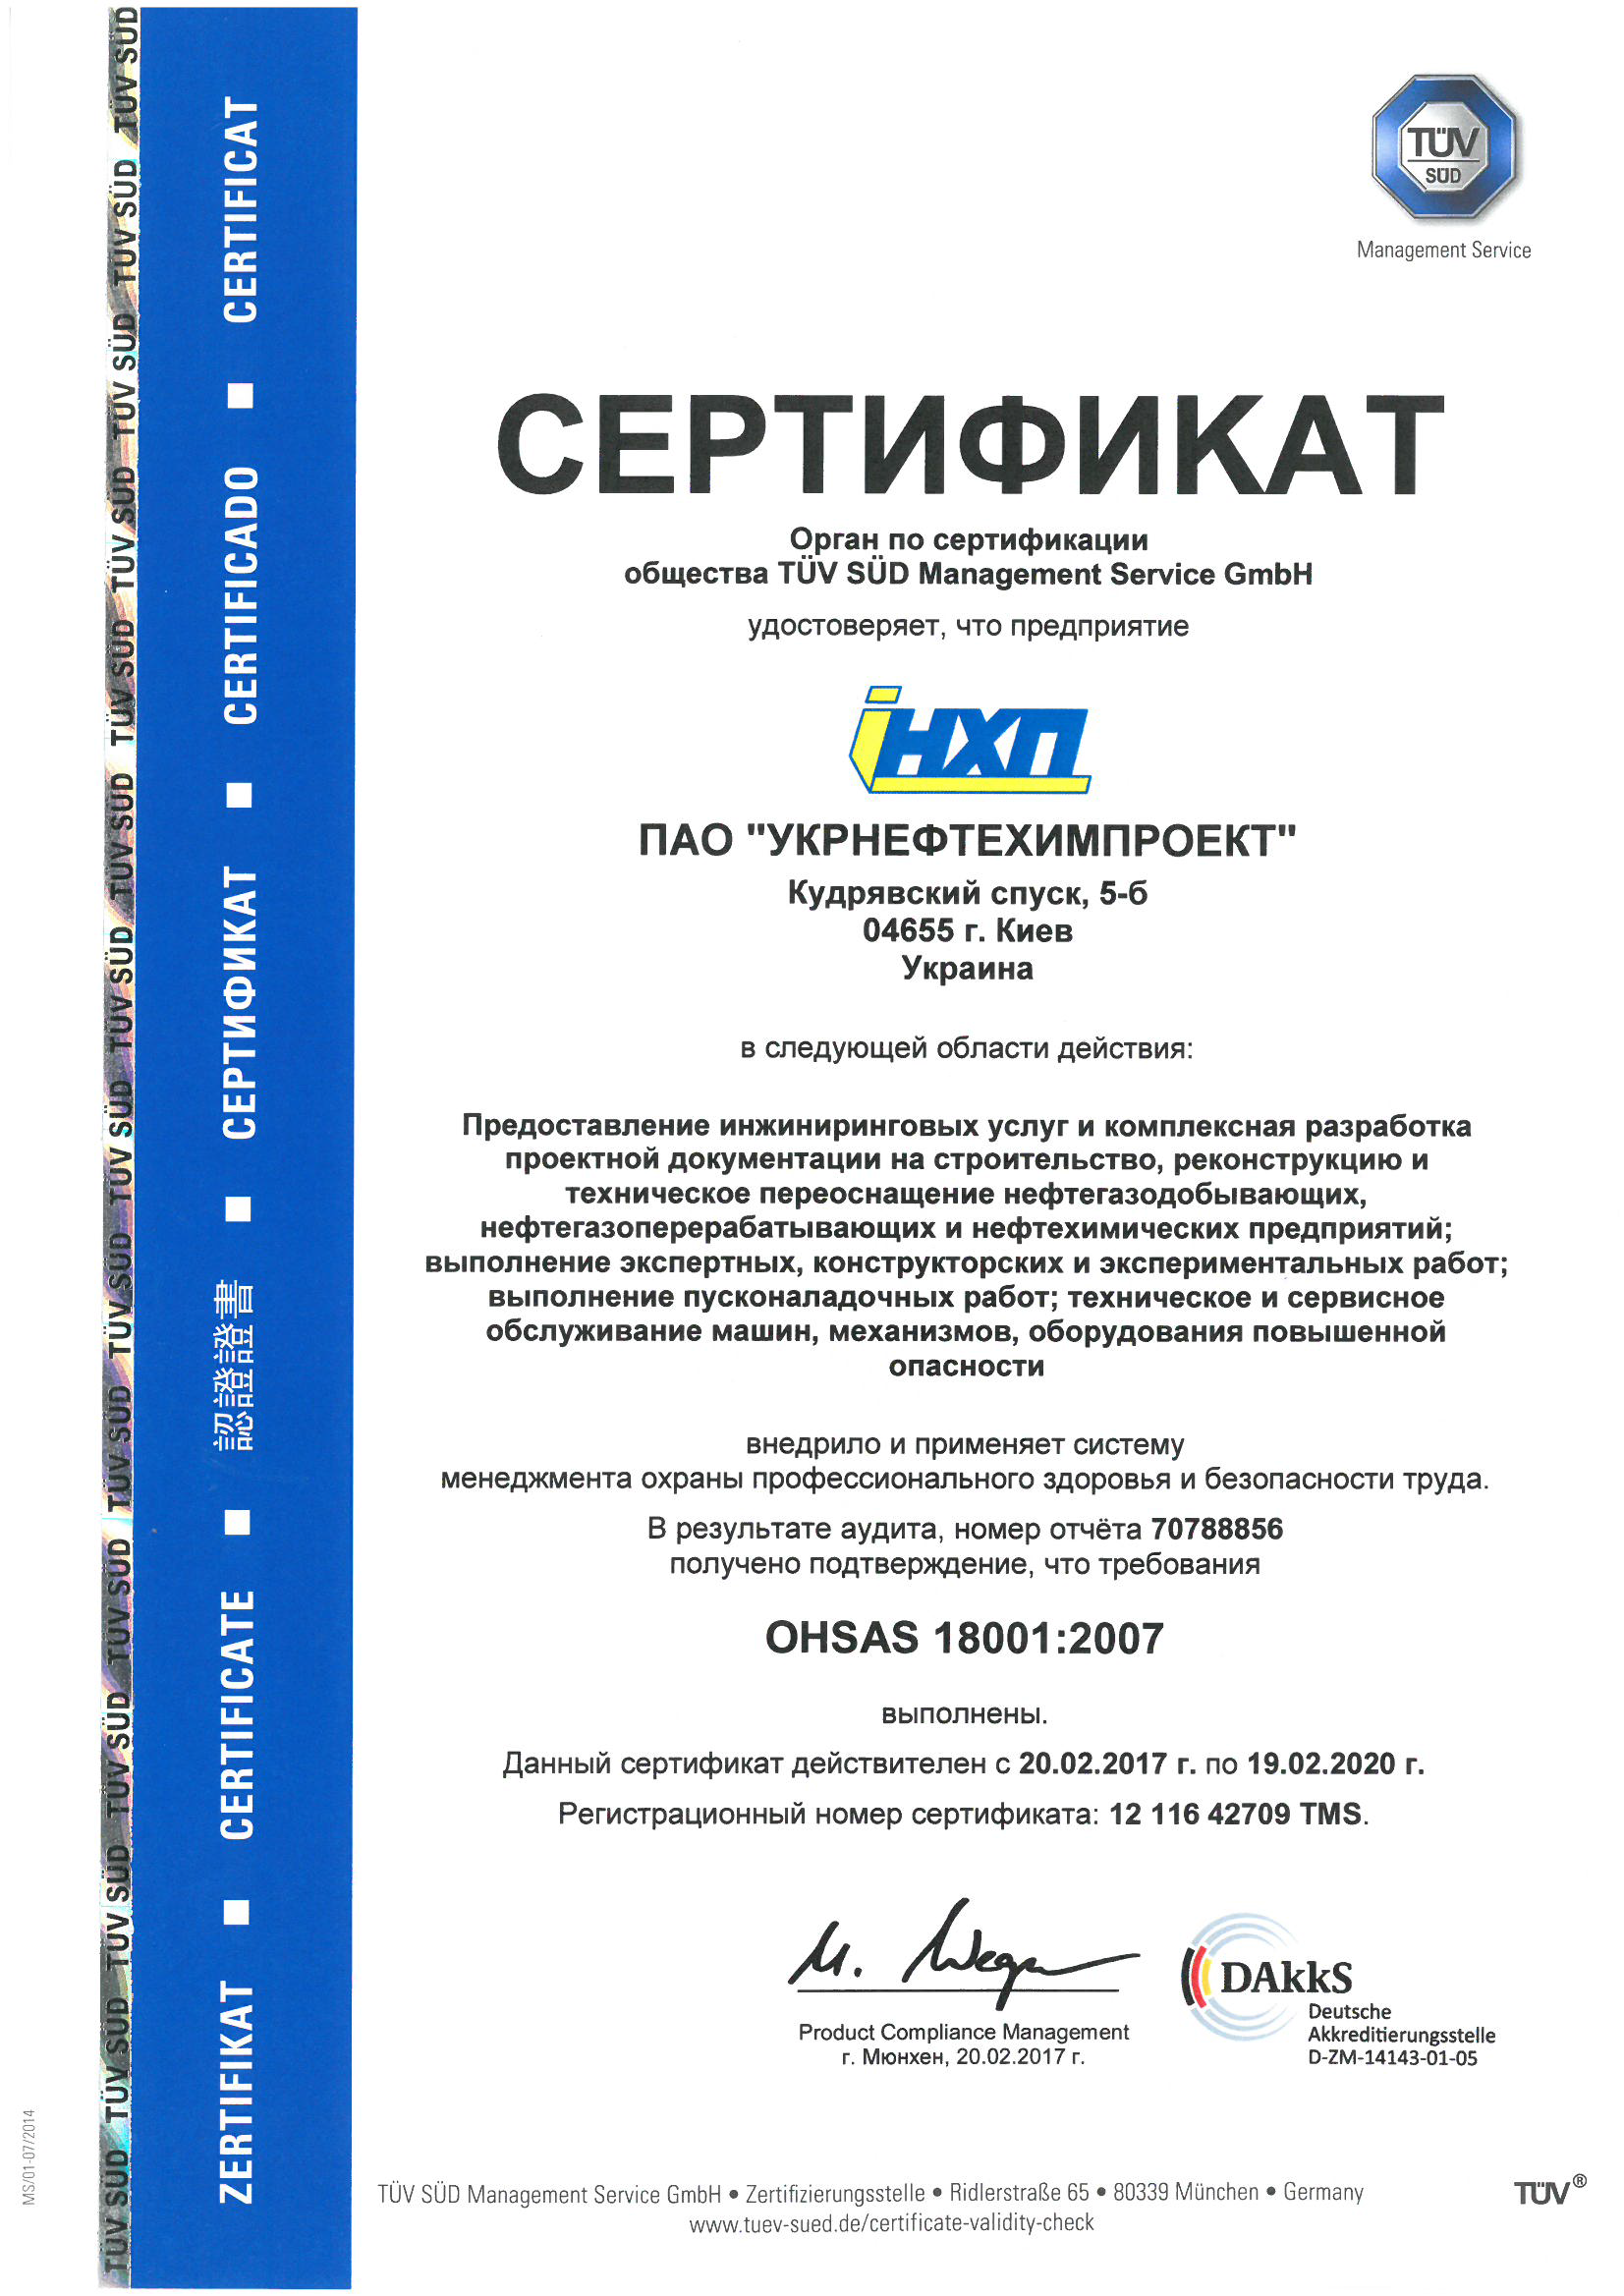 Открыть сертификат ISO 45001:2018в новом окне